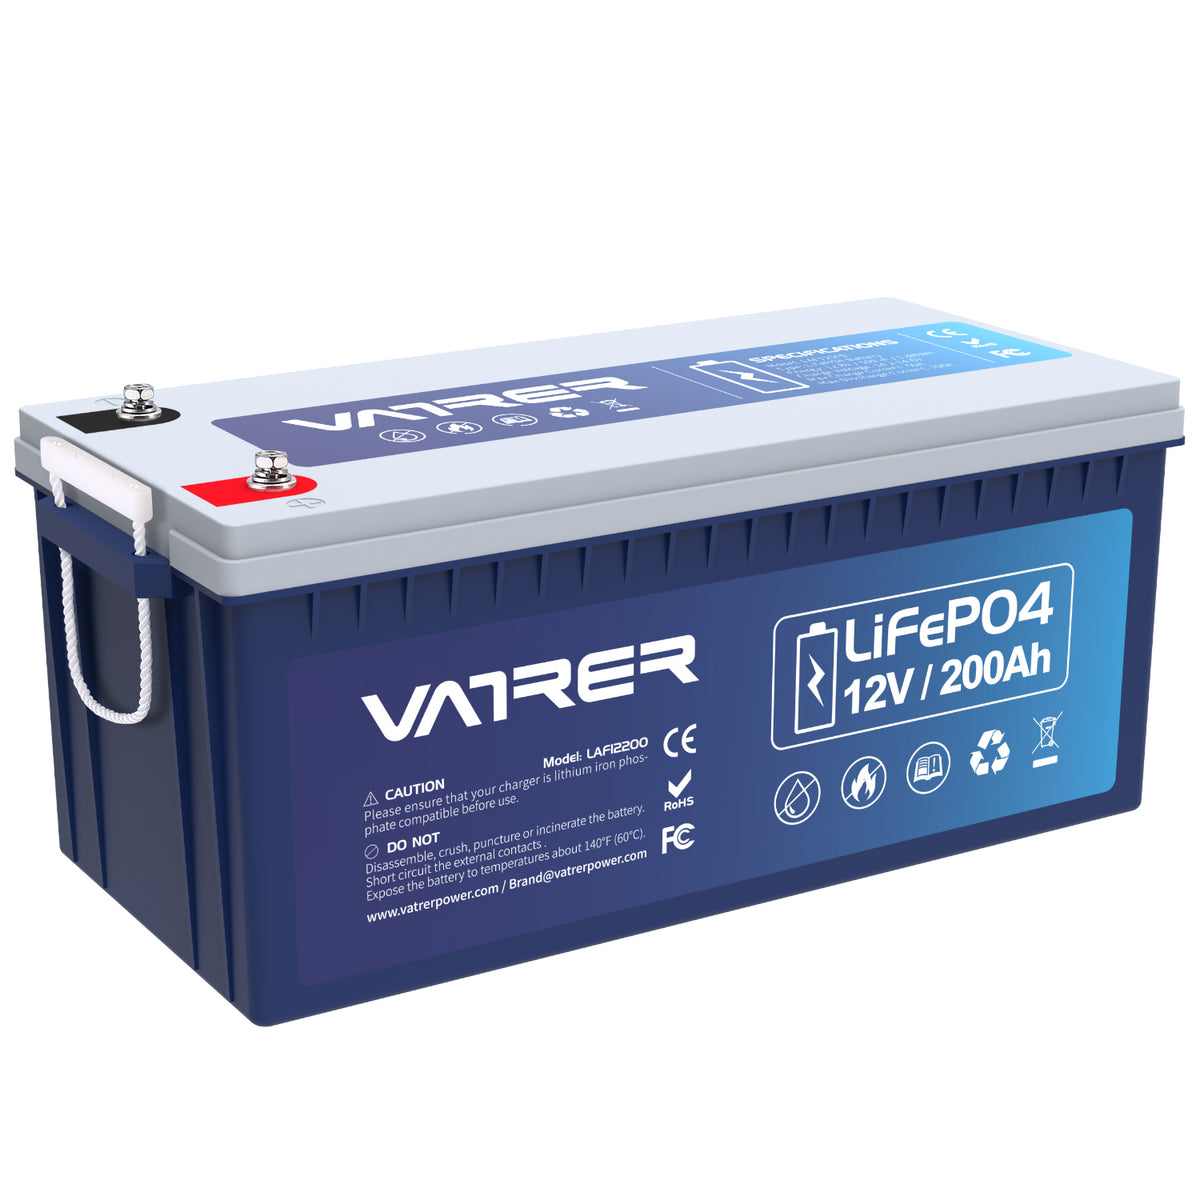 12V 200Ah Plus LiFePO4 リチウム電池、内蔵 200A BMS & 低温カットオフ 11